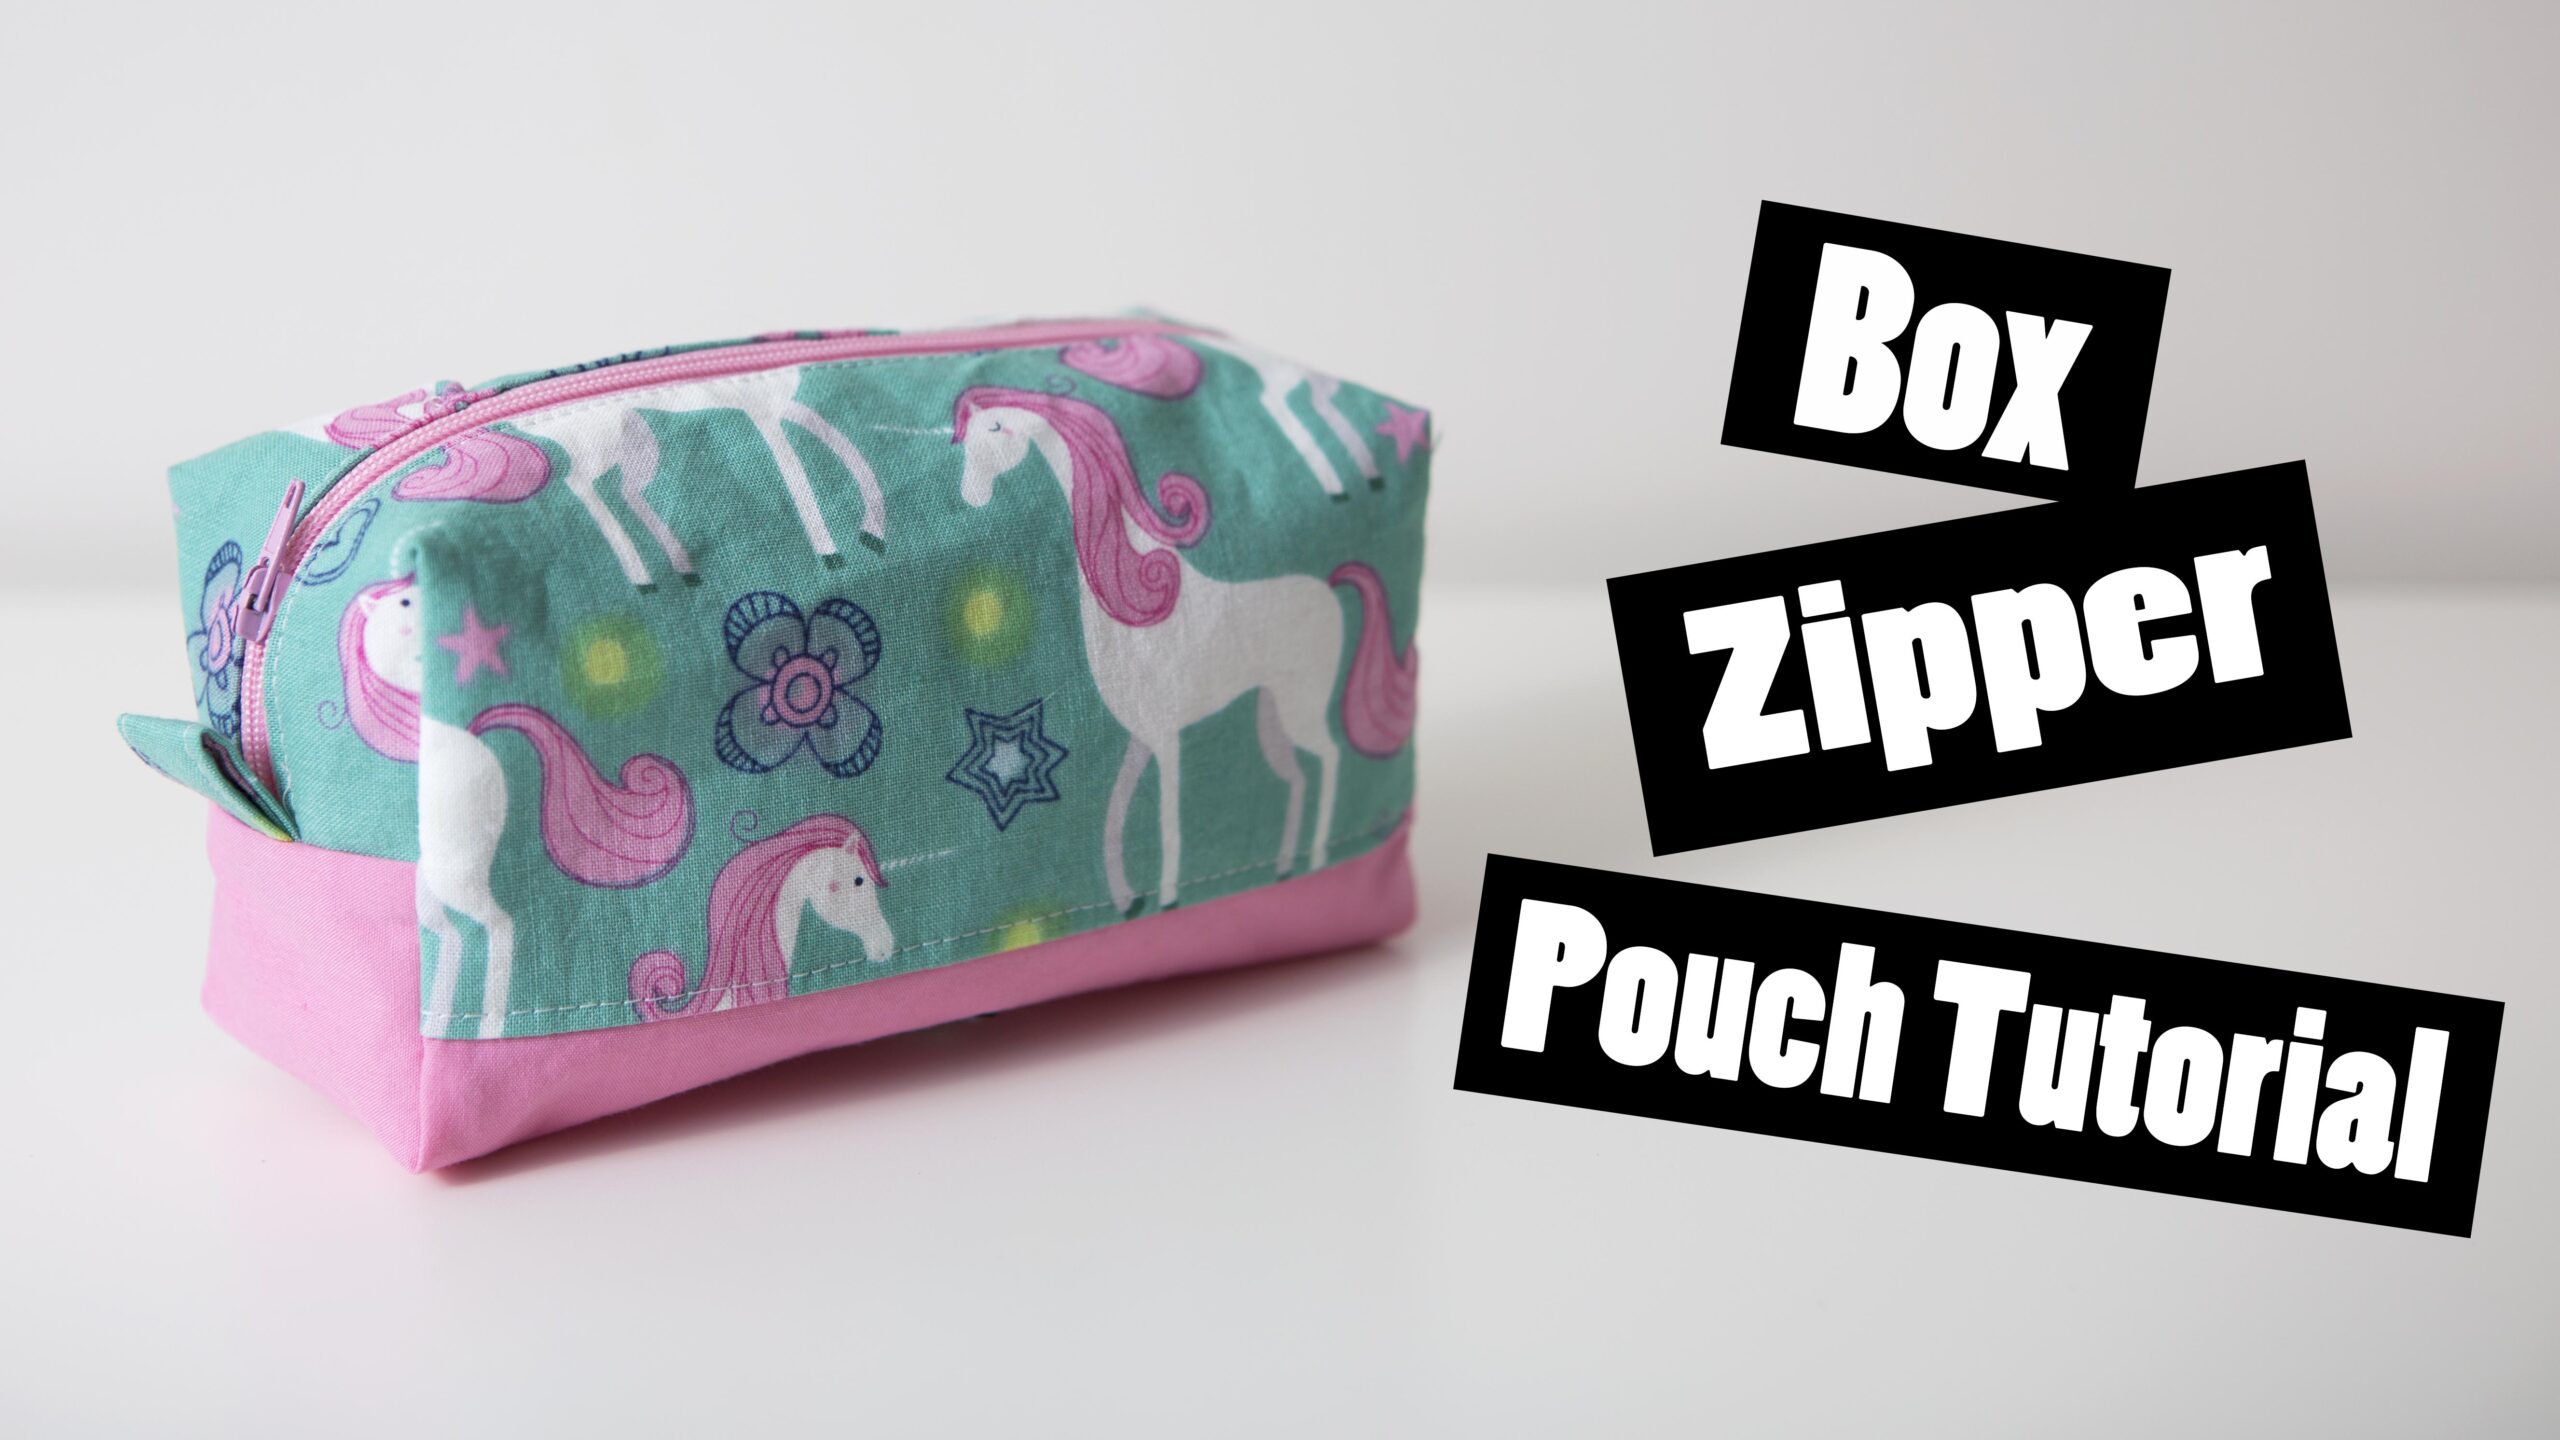 Box Zipper pouch